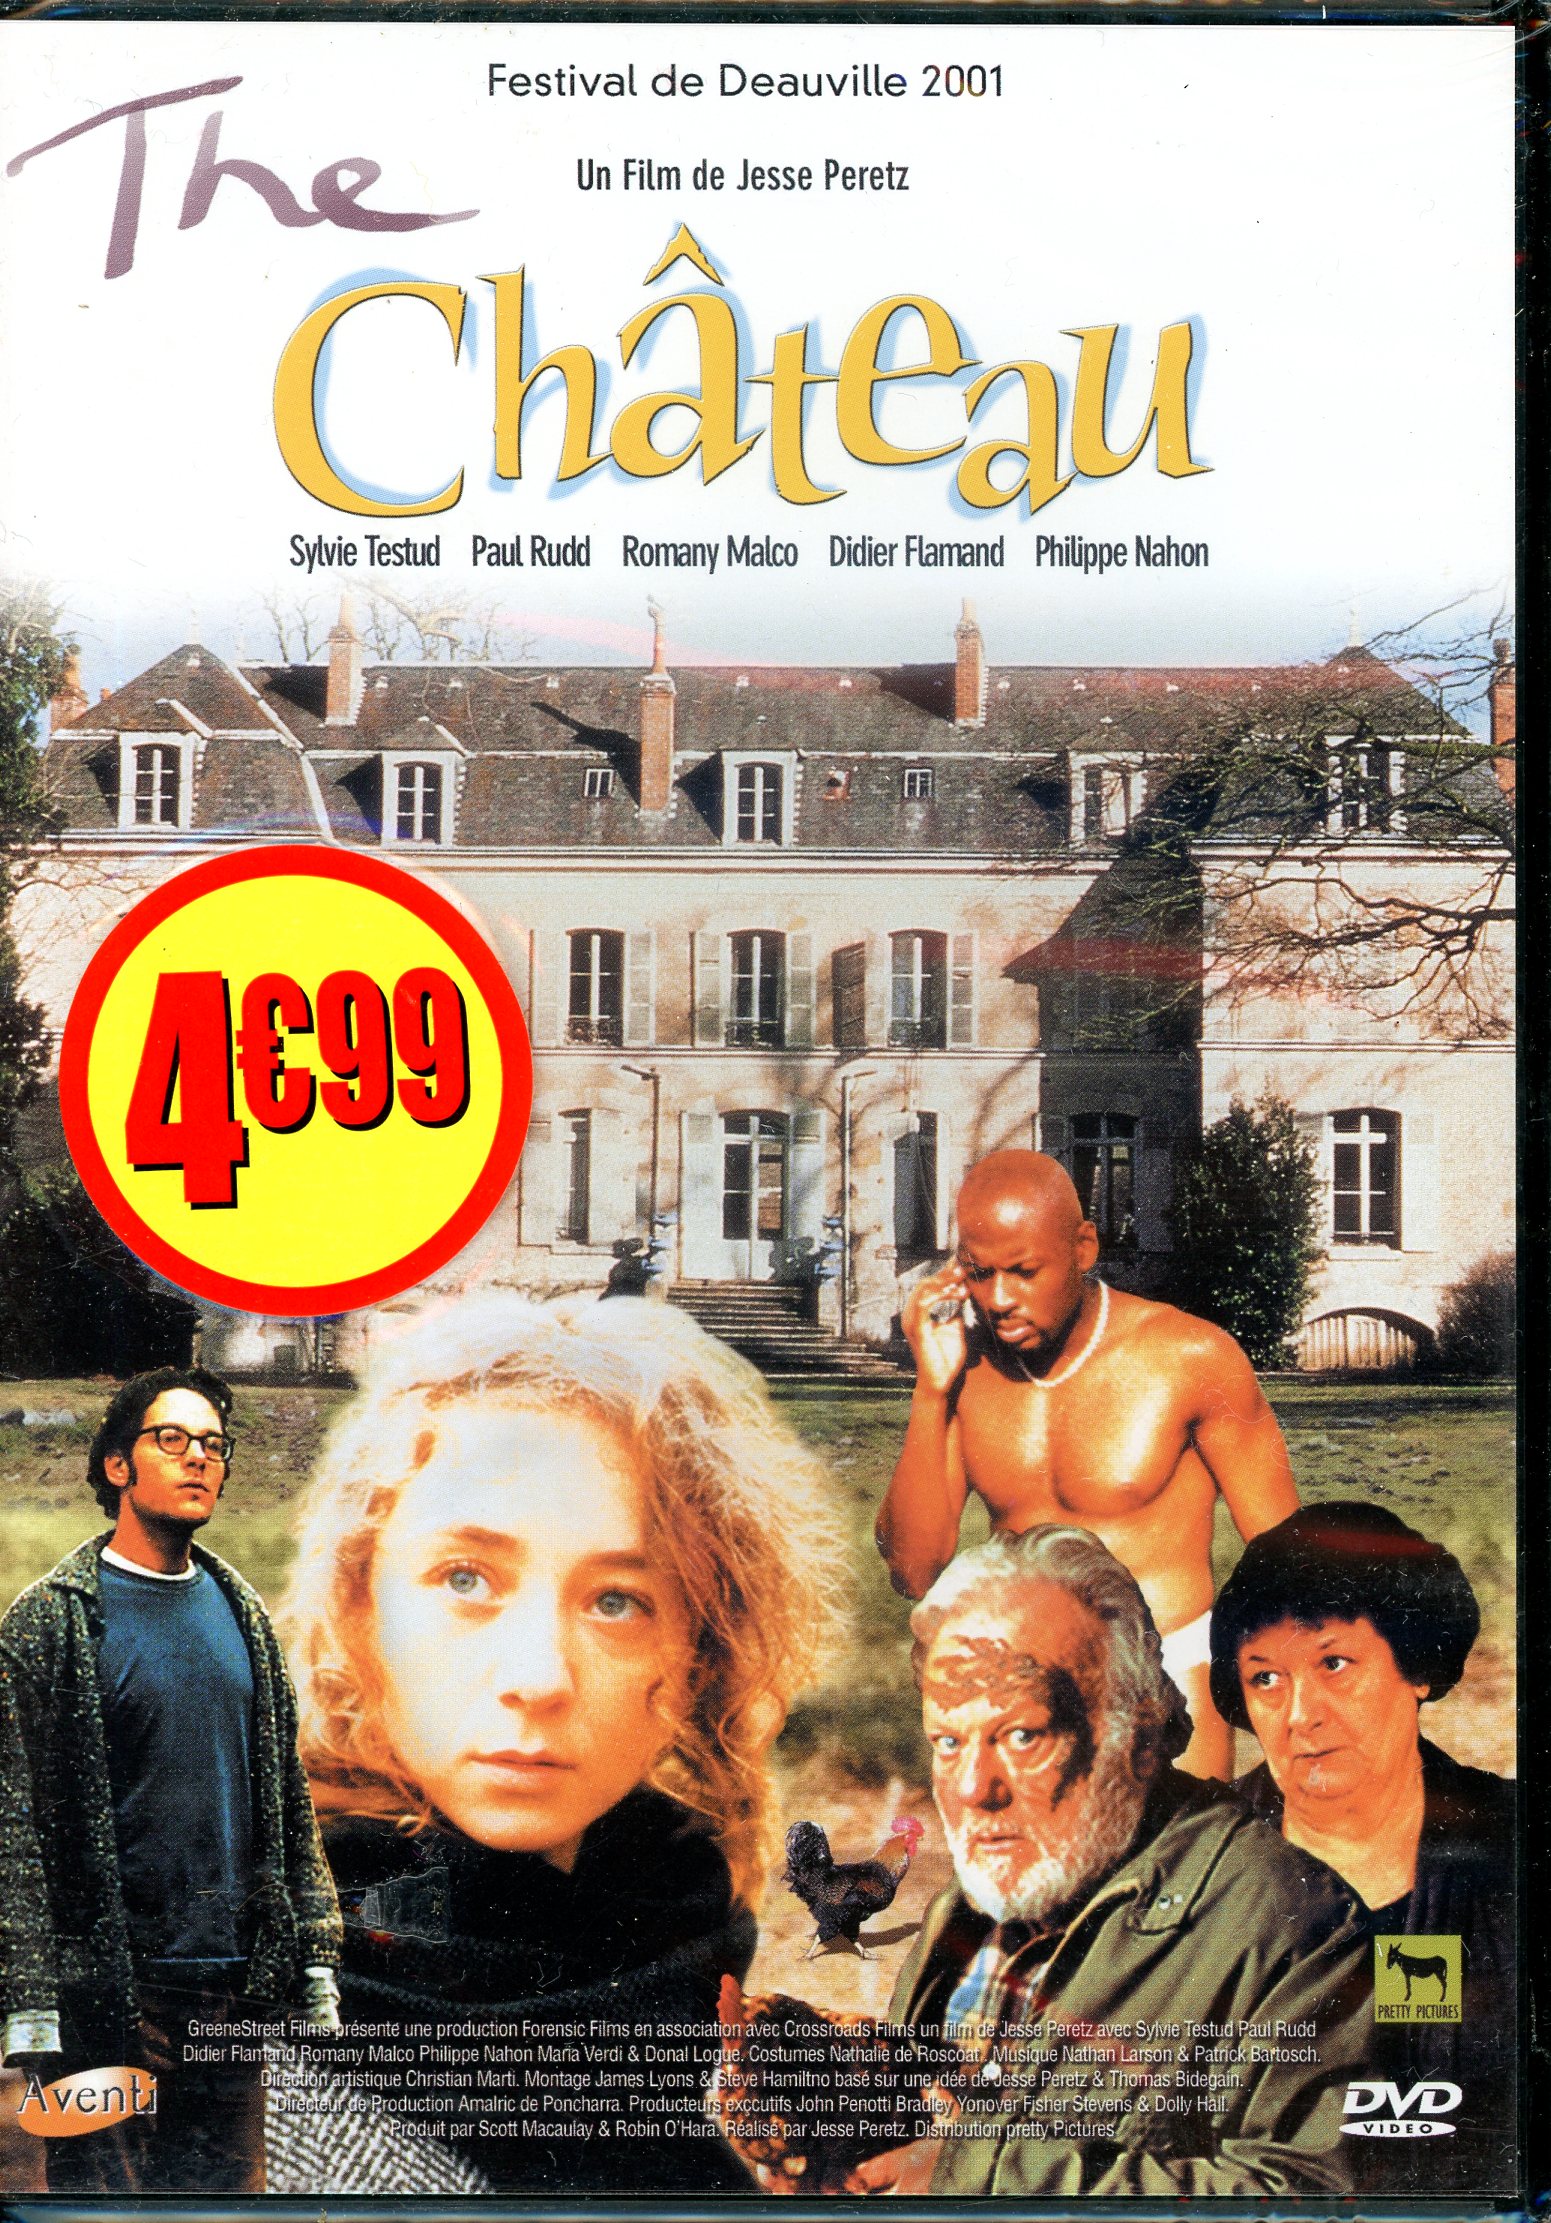 THE CHÂTEAU - UN FILM DE JESSE PARETZ - DVD NEUF SOUS BLISTER